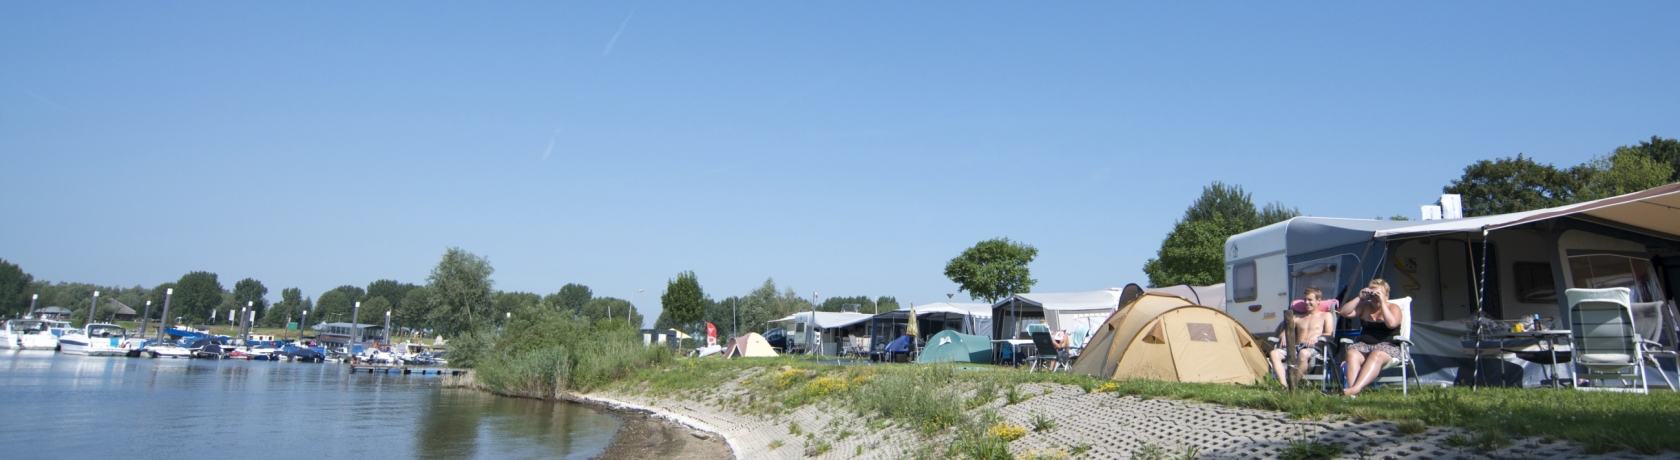 camping aan het water eiland van maurik